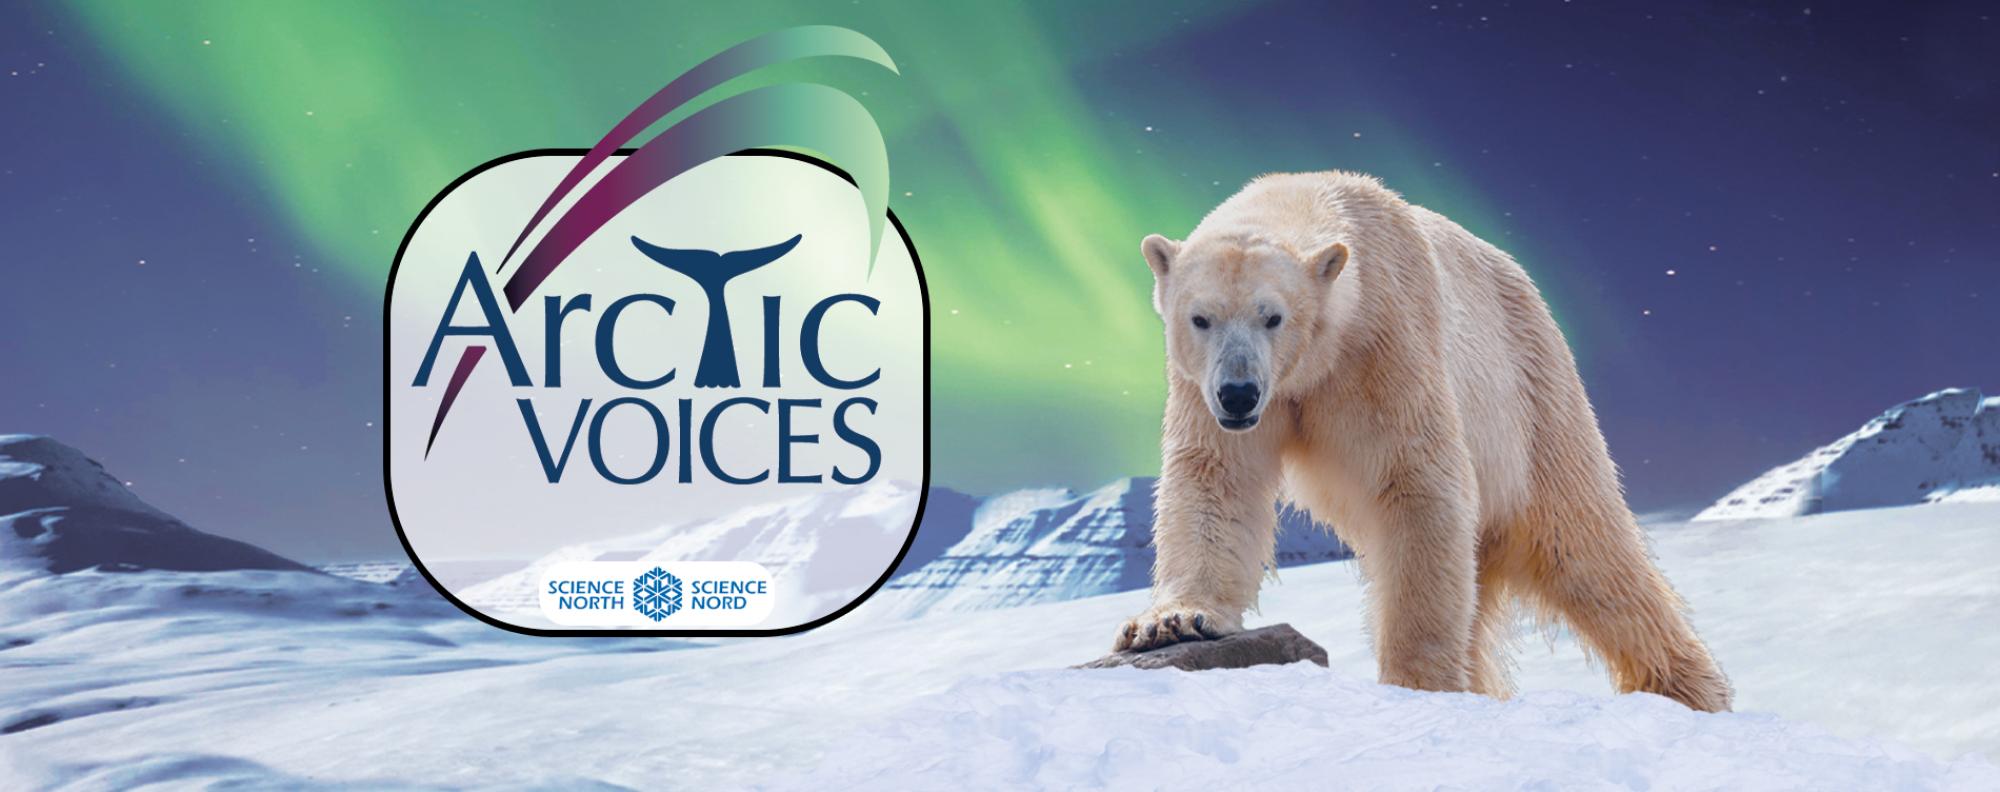 Arctic Voices banner